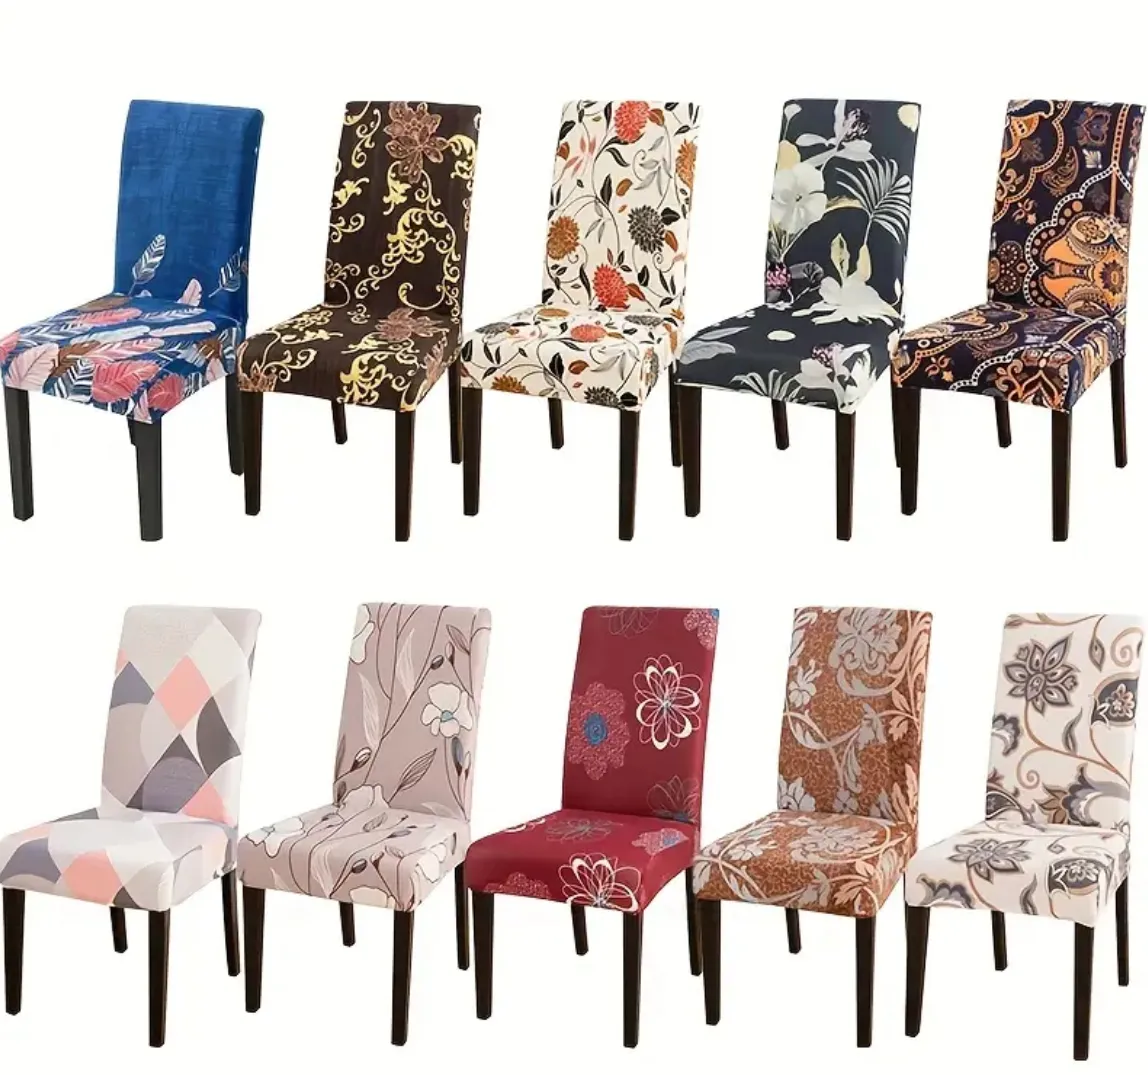 4 -delad blandad stol slipcover -uppsättning - Stylish stretchbara sittskydd för matsalstolar, eleganta blommor och mönsterdesign